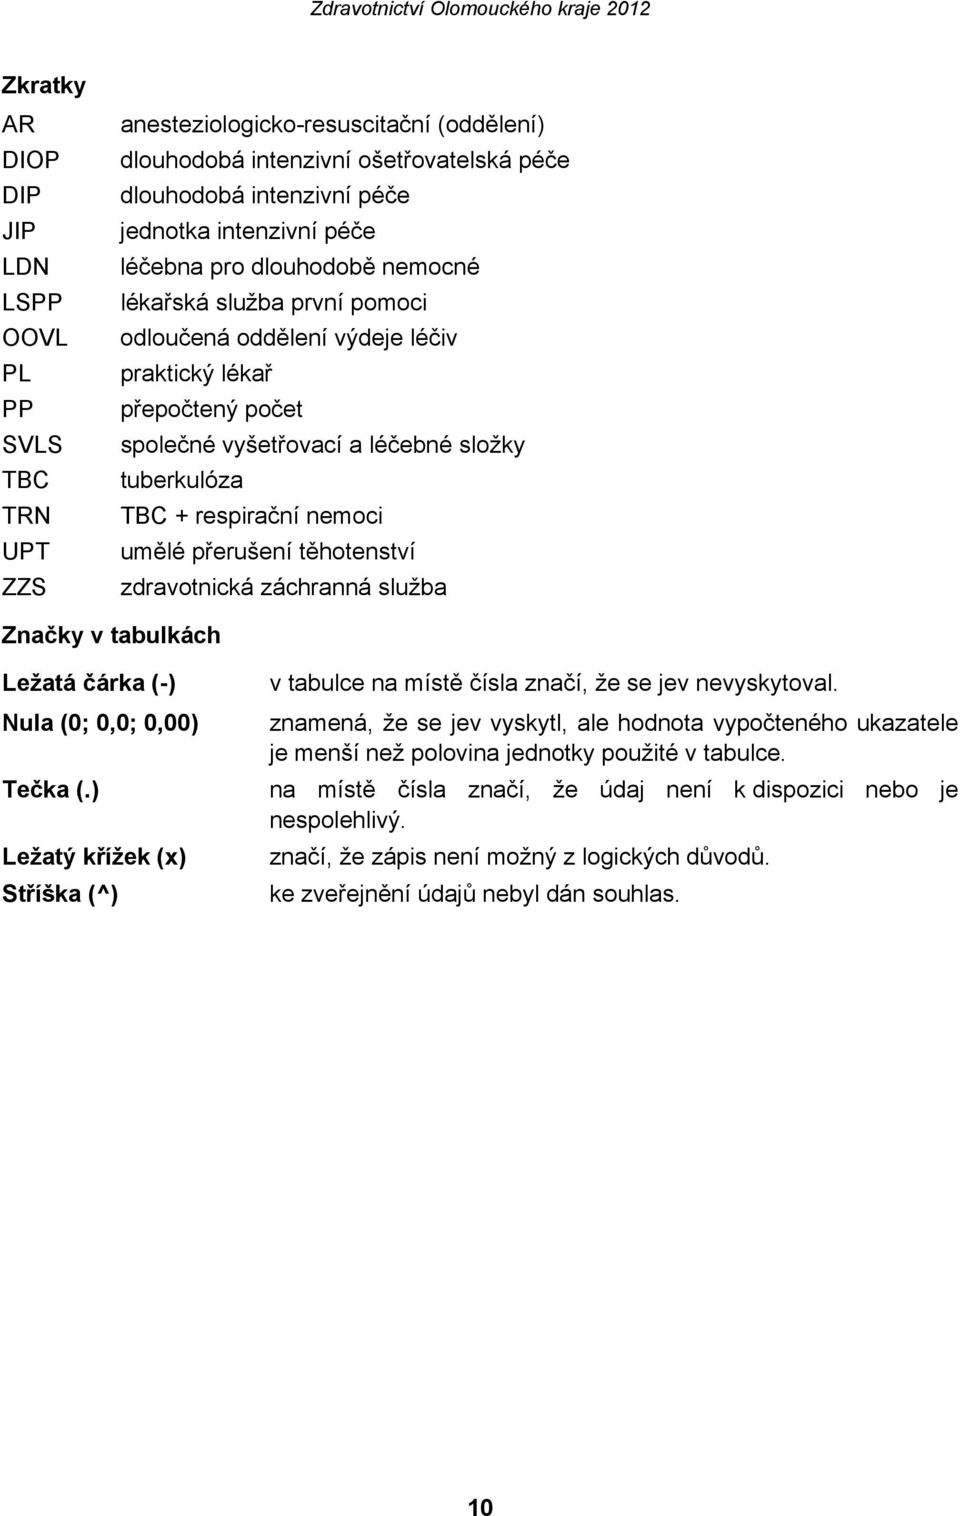 umělé přerušení těhotenství zdravotnická záchranná služba Značky v tabulkách Ležatá čárka (-) Nula (0; 0,0; 0,00) Tečka (.